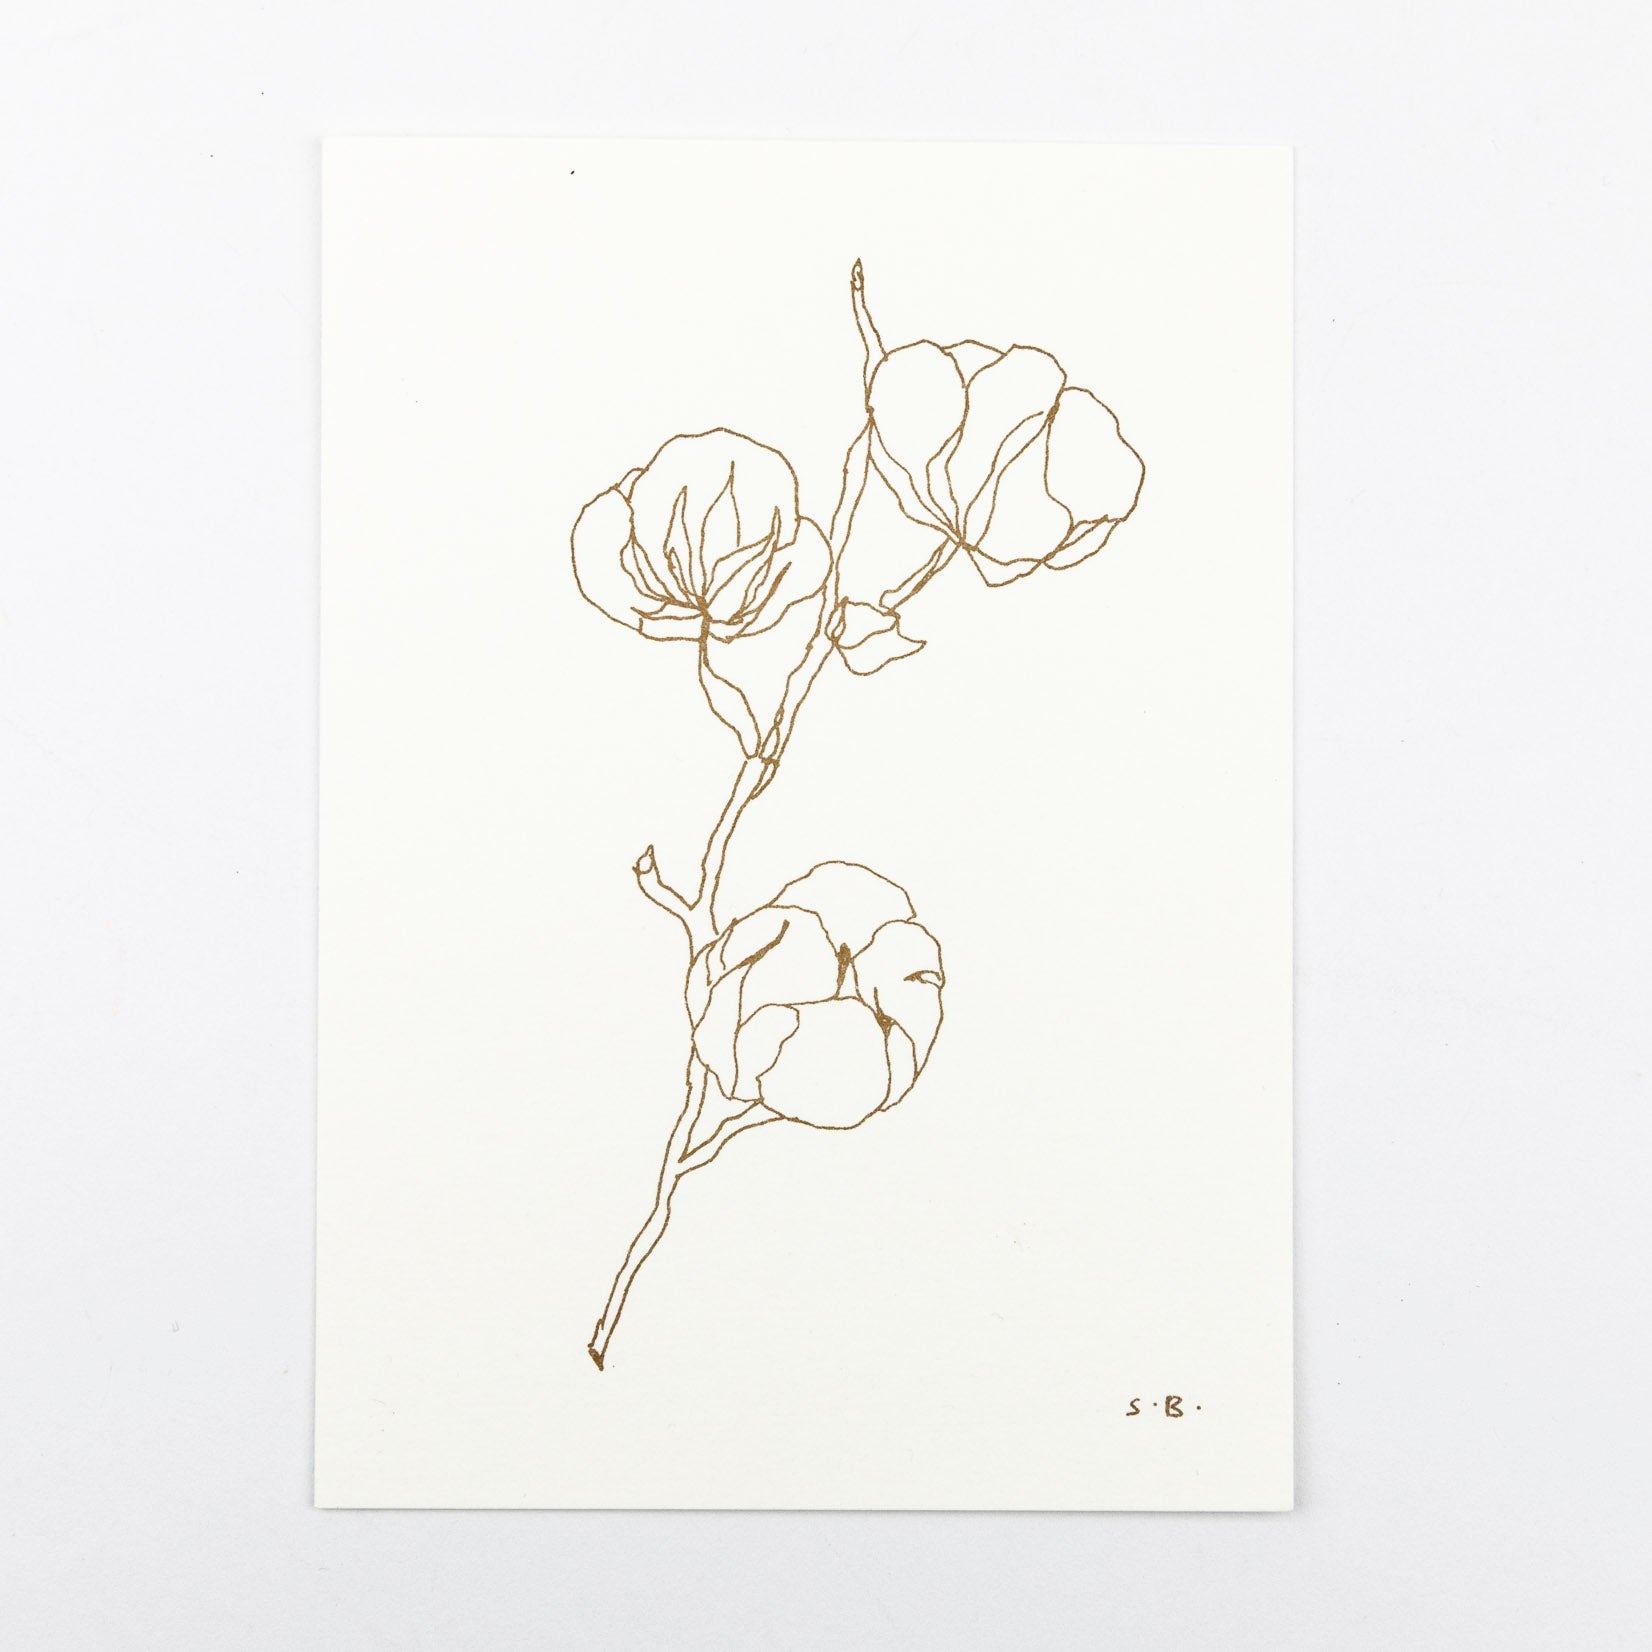 Stilisierter Zweig mit Baumwollblüten in Braun auf cremefarbenem Karton